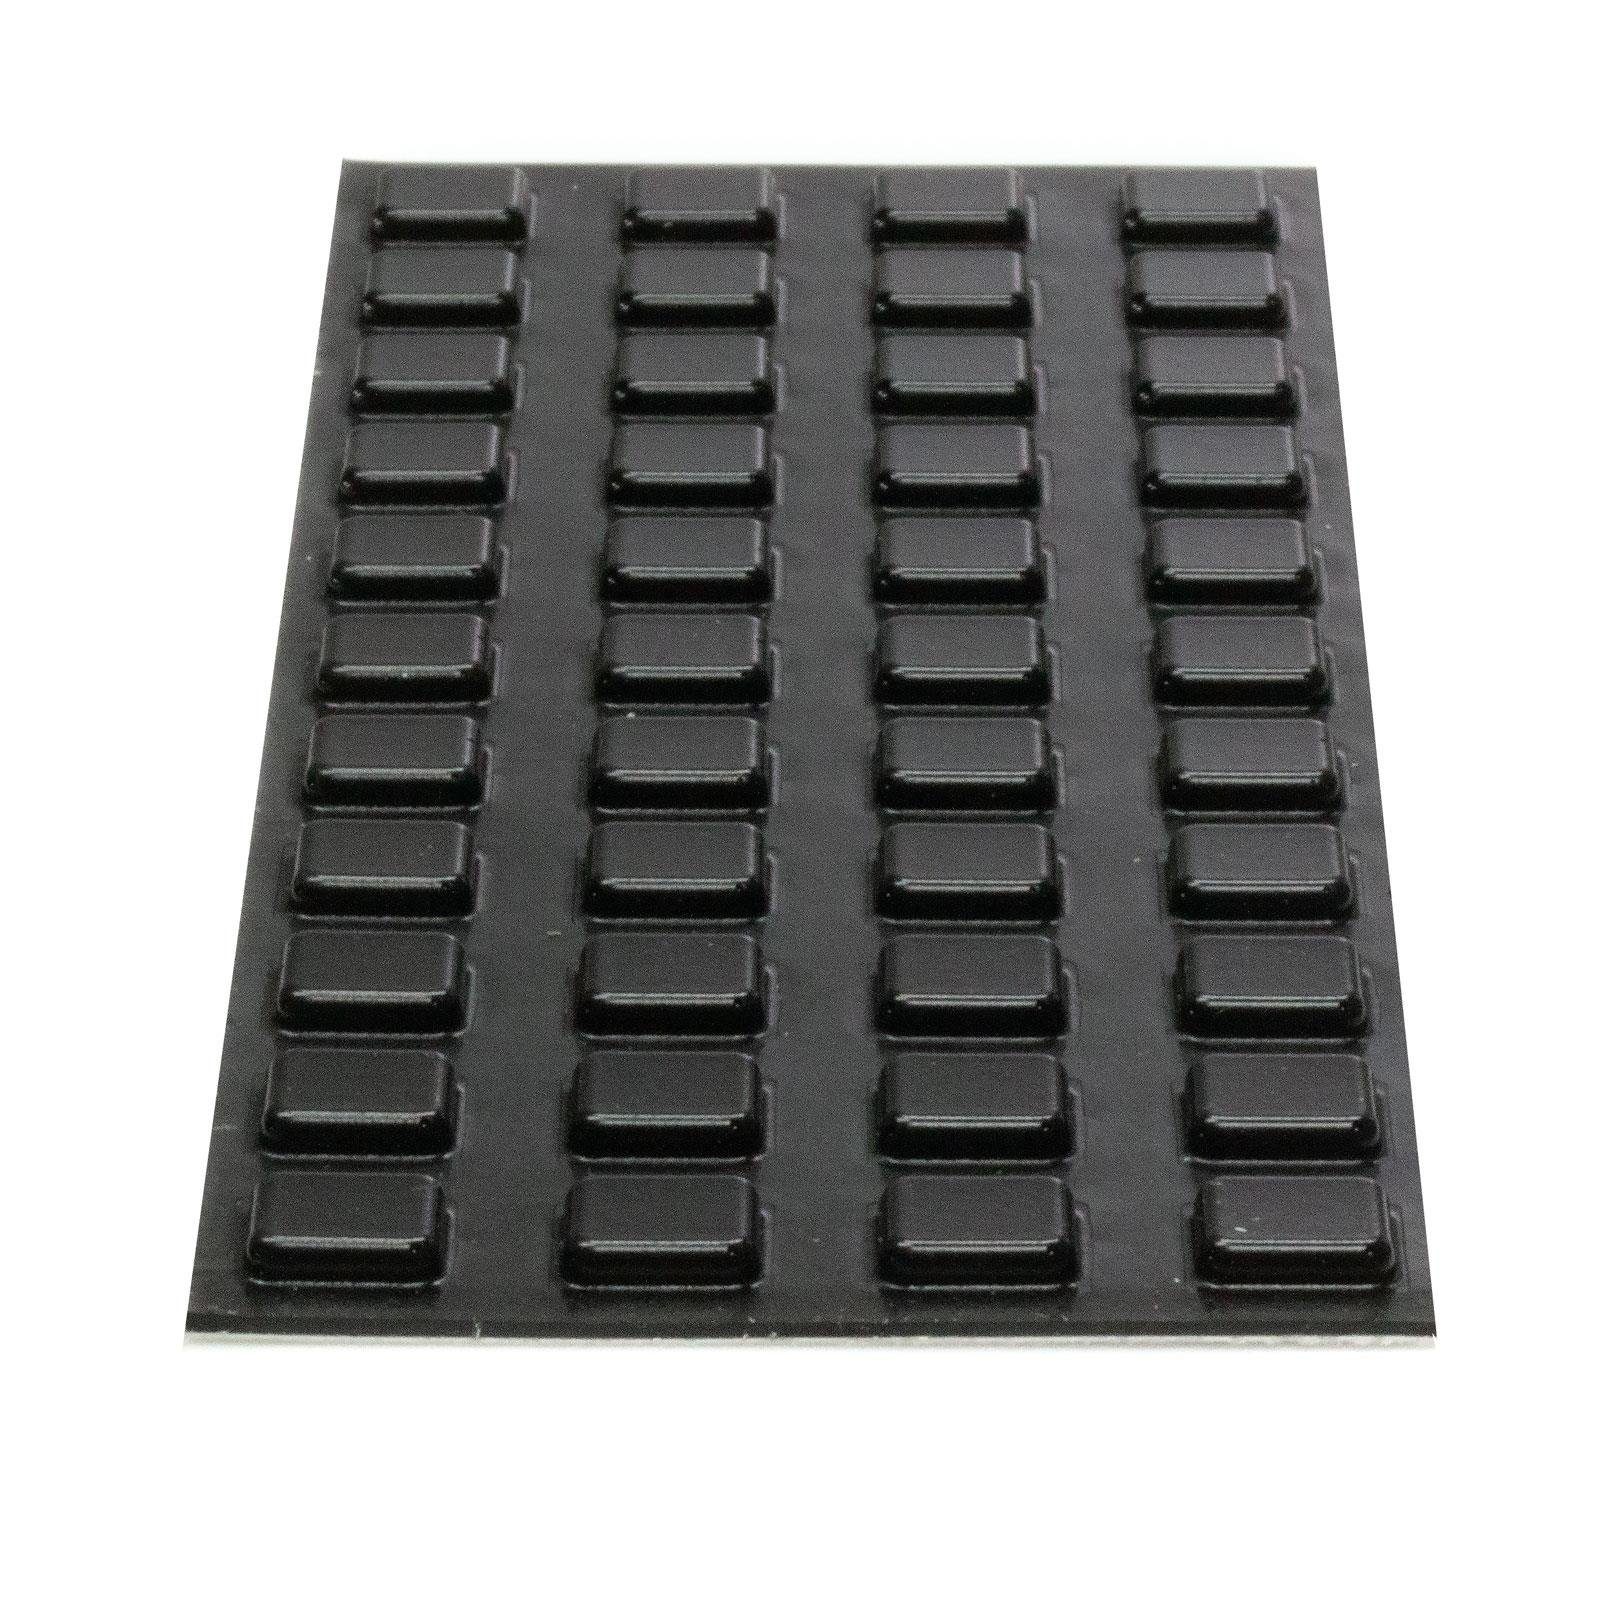 Anschlagpuffer schwarz Puffer Elastik Klebeband (44-St) Bumpons Möbelpuffer